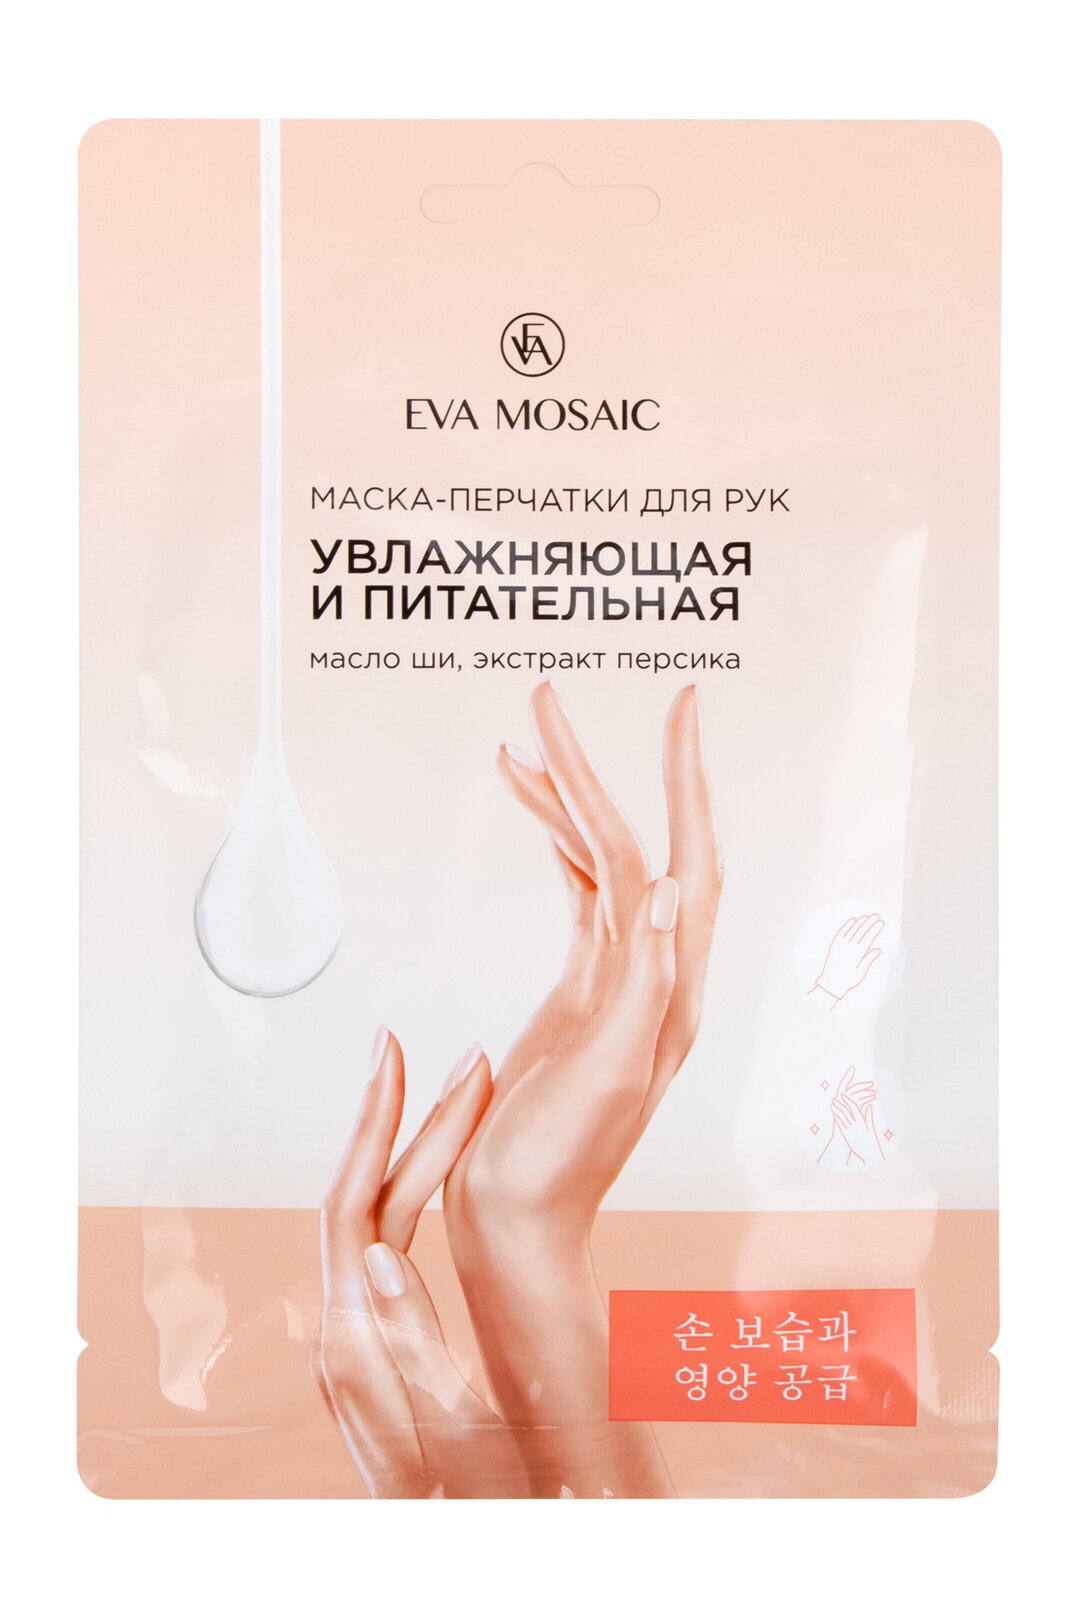 EVA MOSAIC Маска-перчатки для рук увлажняющая, питательная с маслом ши, экстрактом персика, 13 г х 1 пара